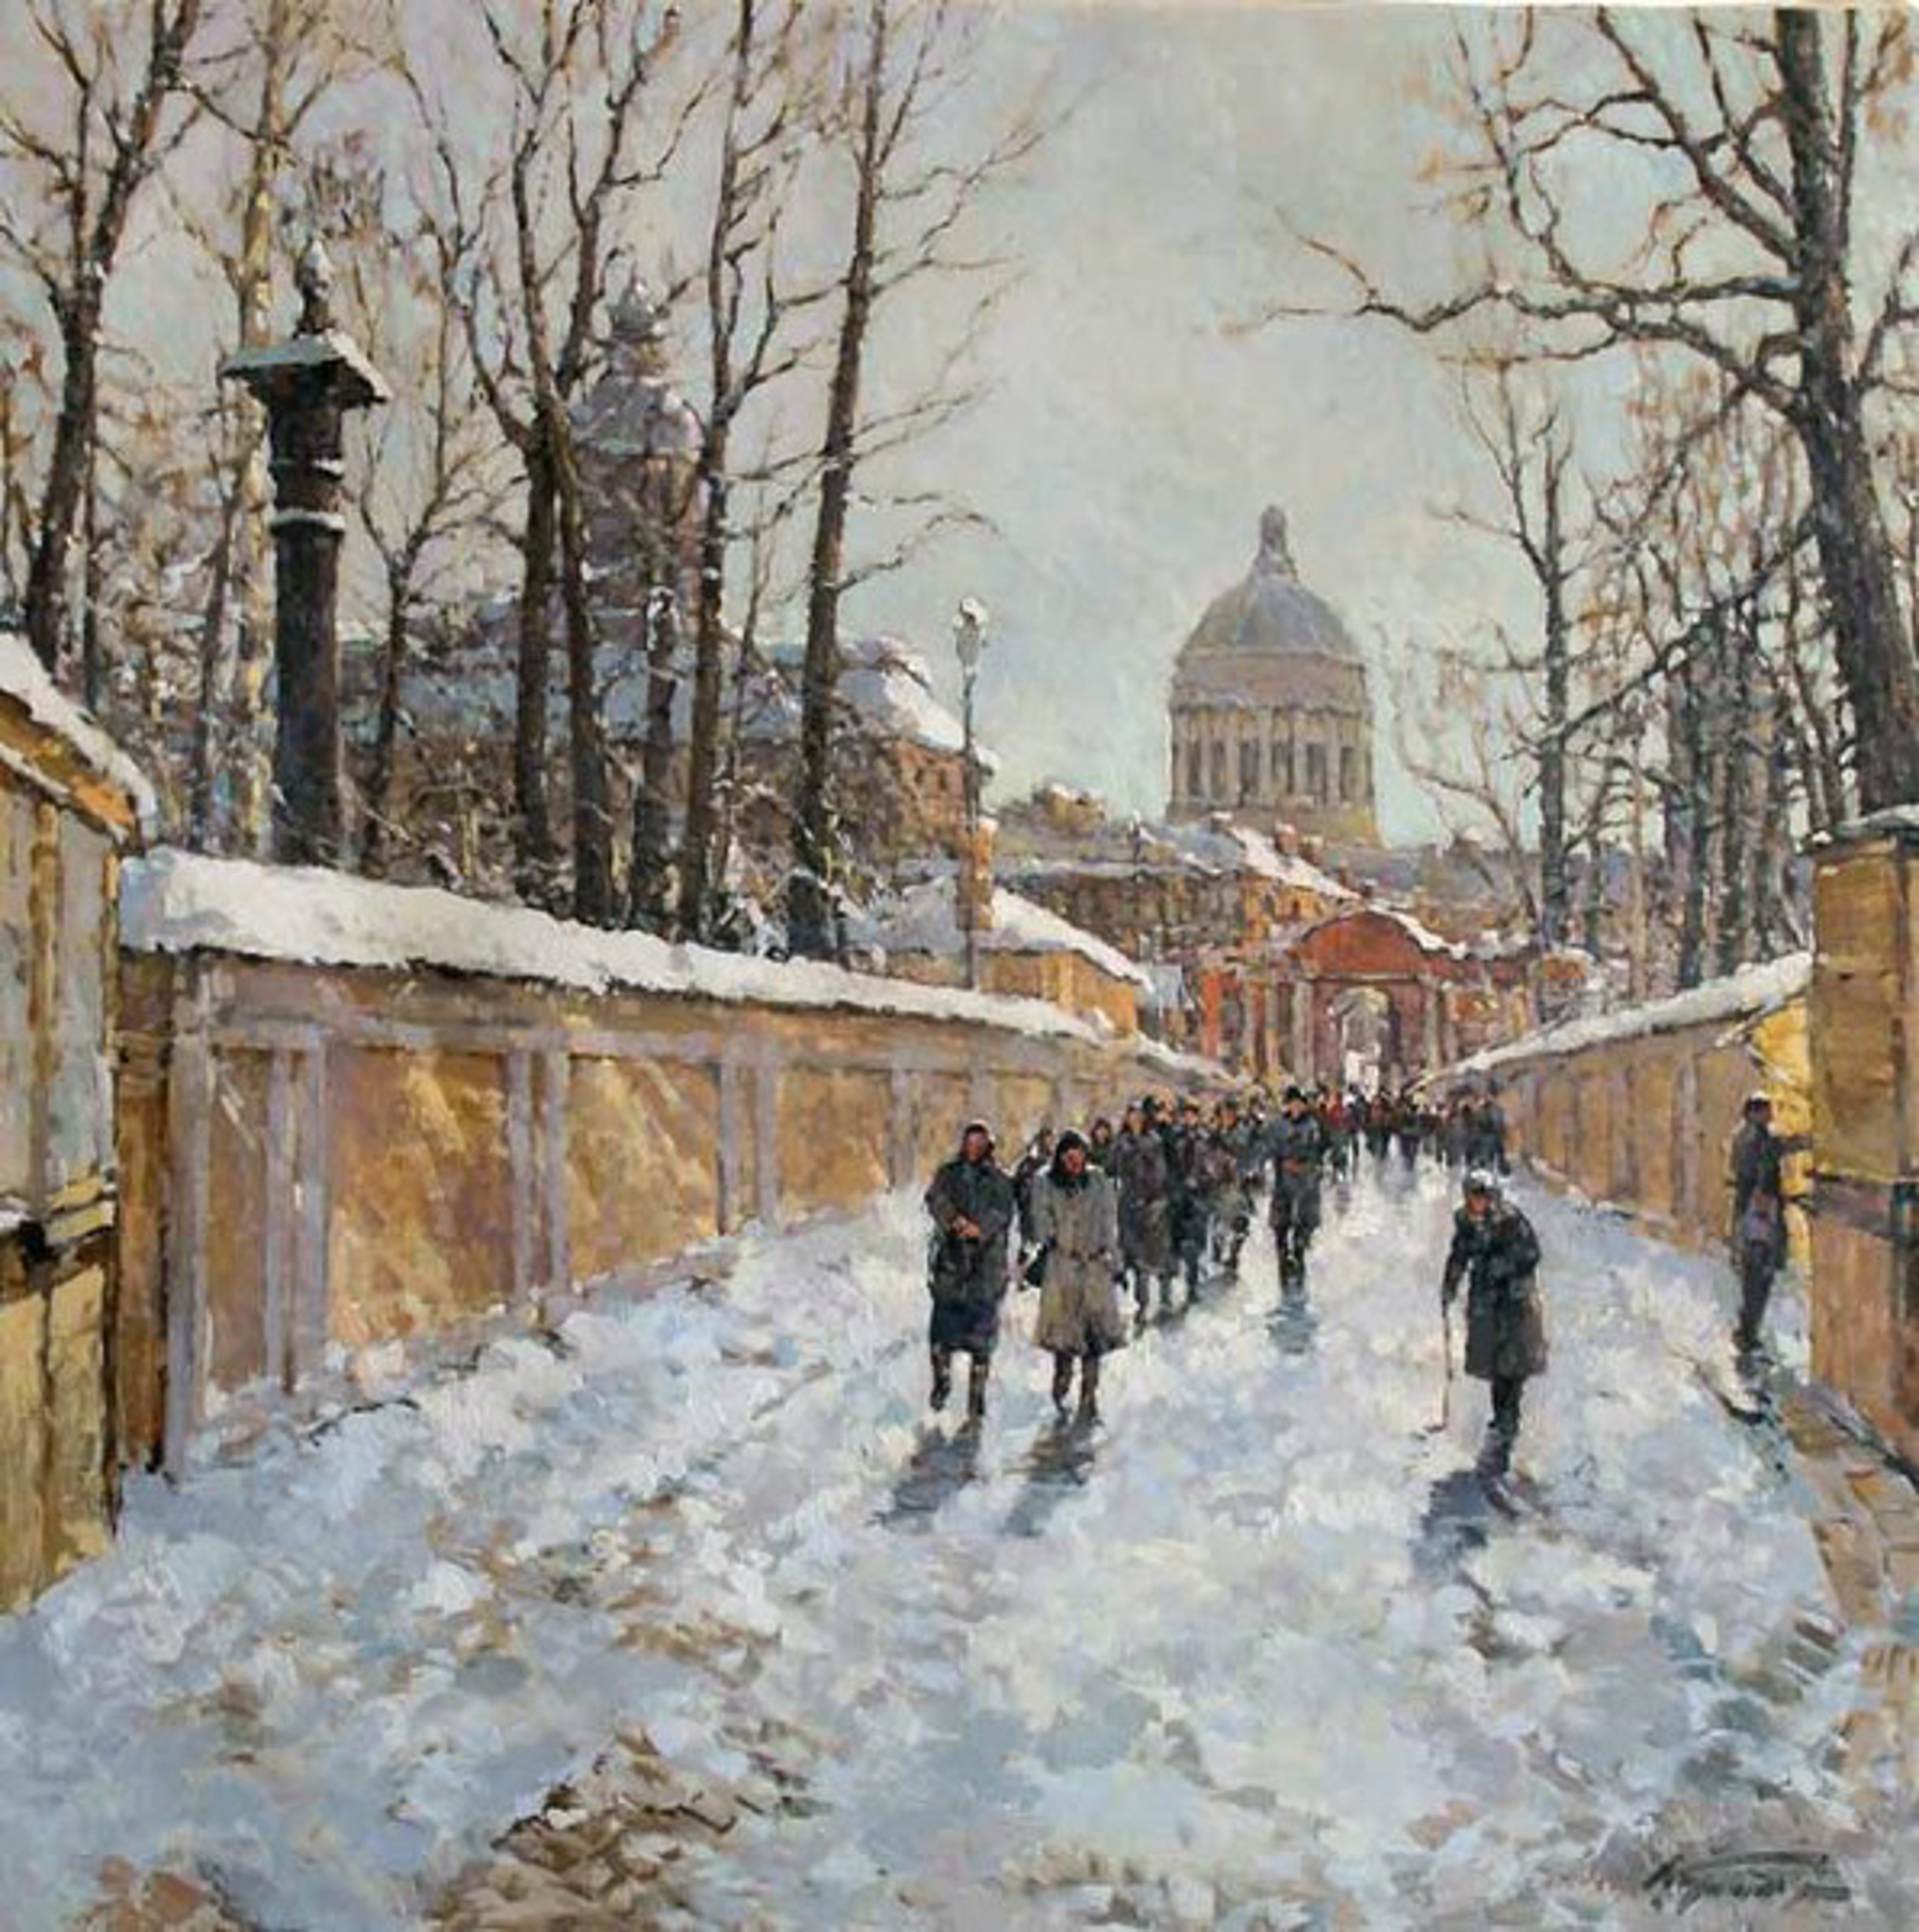 Alexander Nevsky Lavra by Alexander Kremer